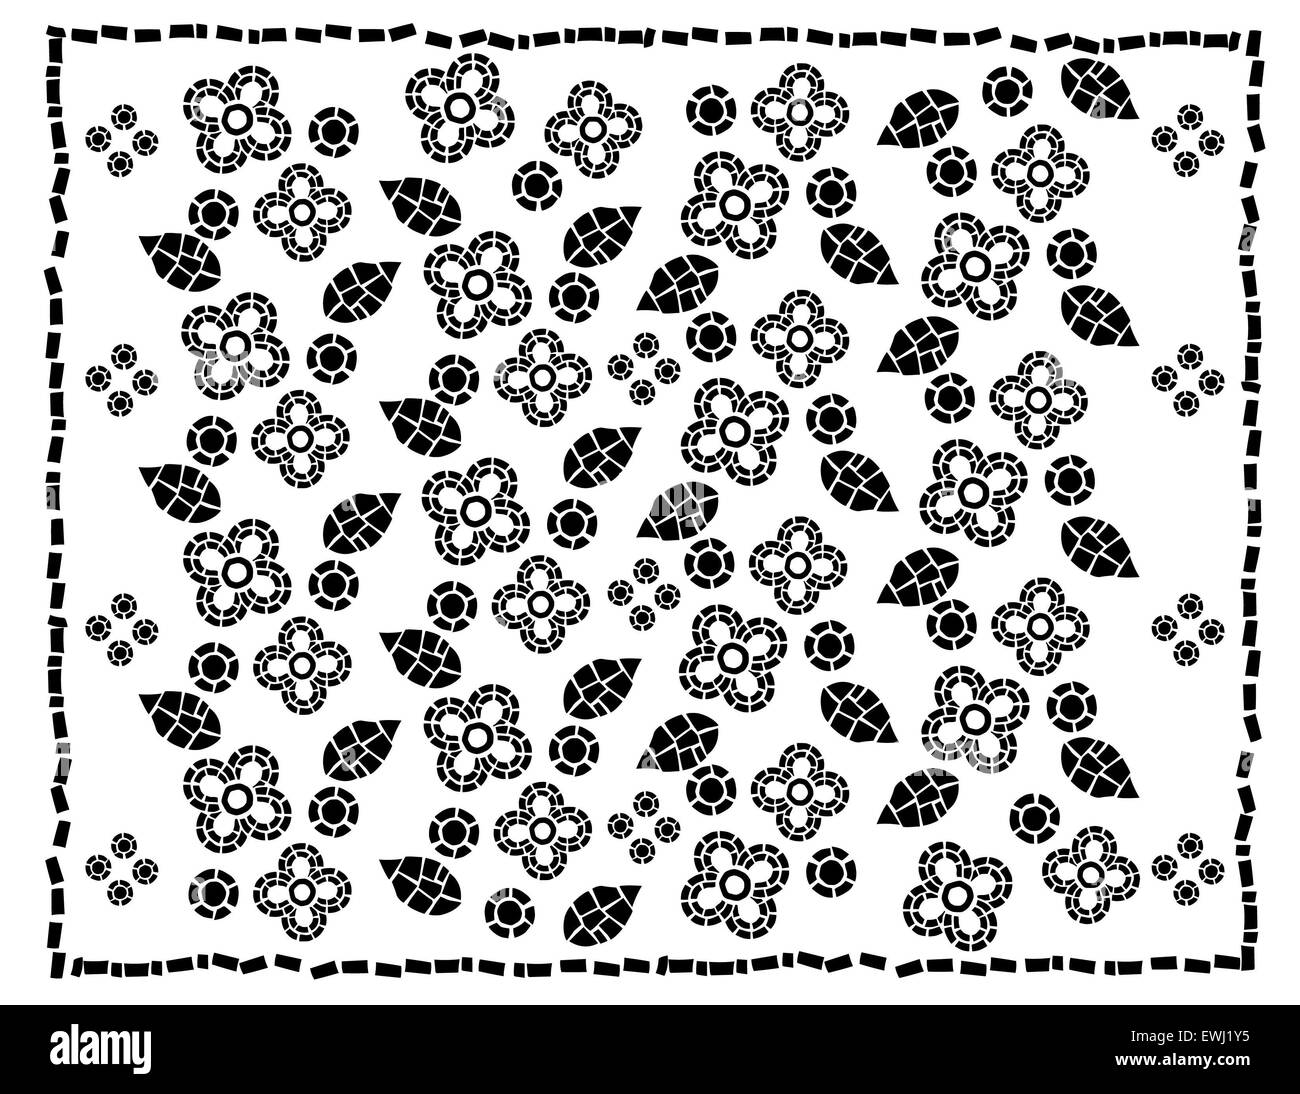 Original composición floral de las formas geométricas en blanco y negro para decorar tus espacios especiales Foto de stock